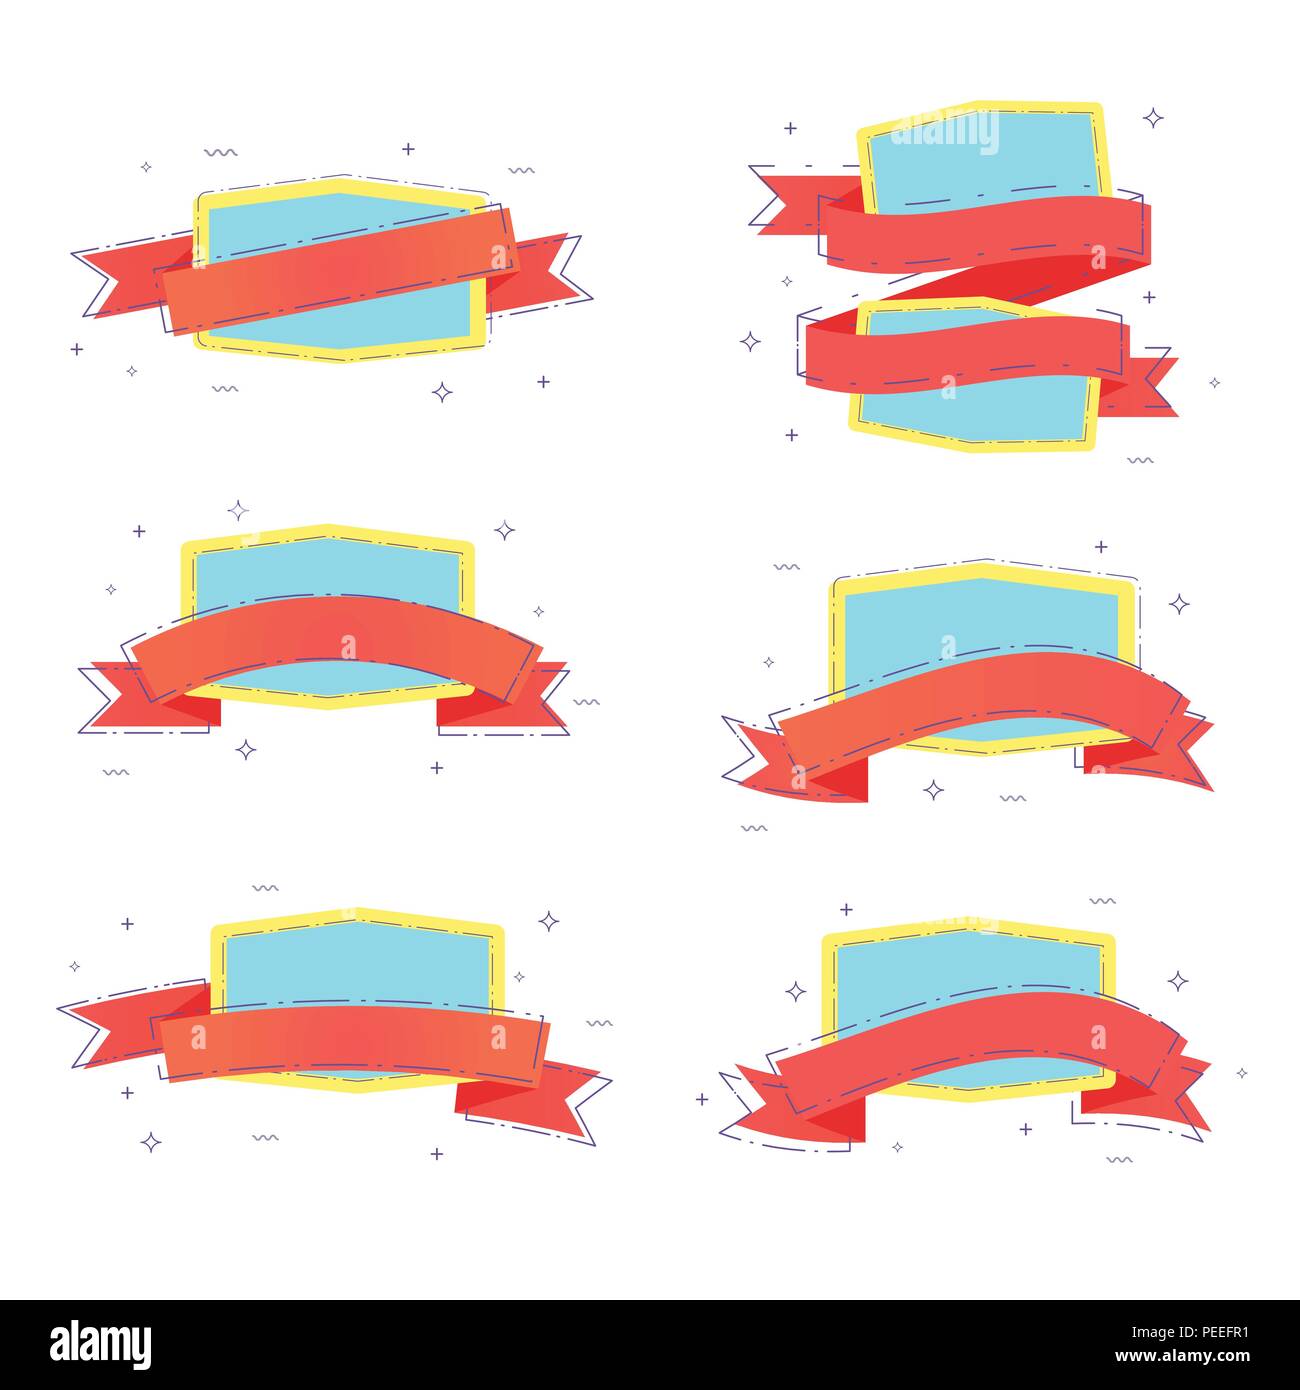 Eingestellt von Ribbon Abzeichen mit gestrichelten Linien und geometrischen abstrakten Formen. Elemente für Grafik Design - Banner, ad, Poster, Flyer, tag, Kupon, Karte, Embl Stock Vektor